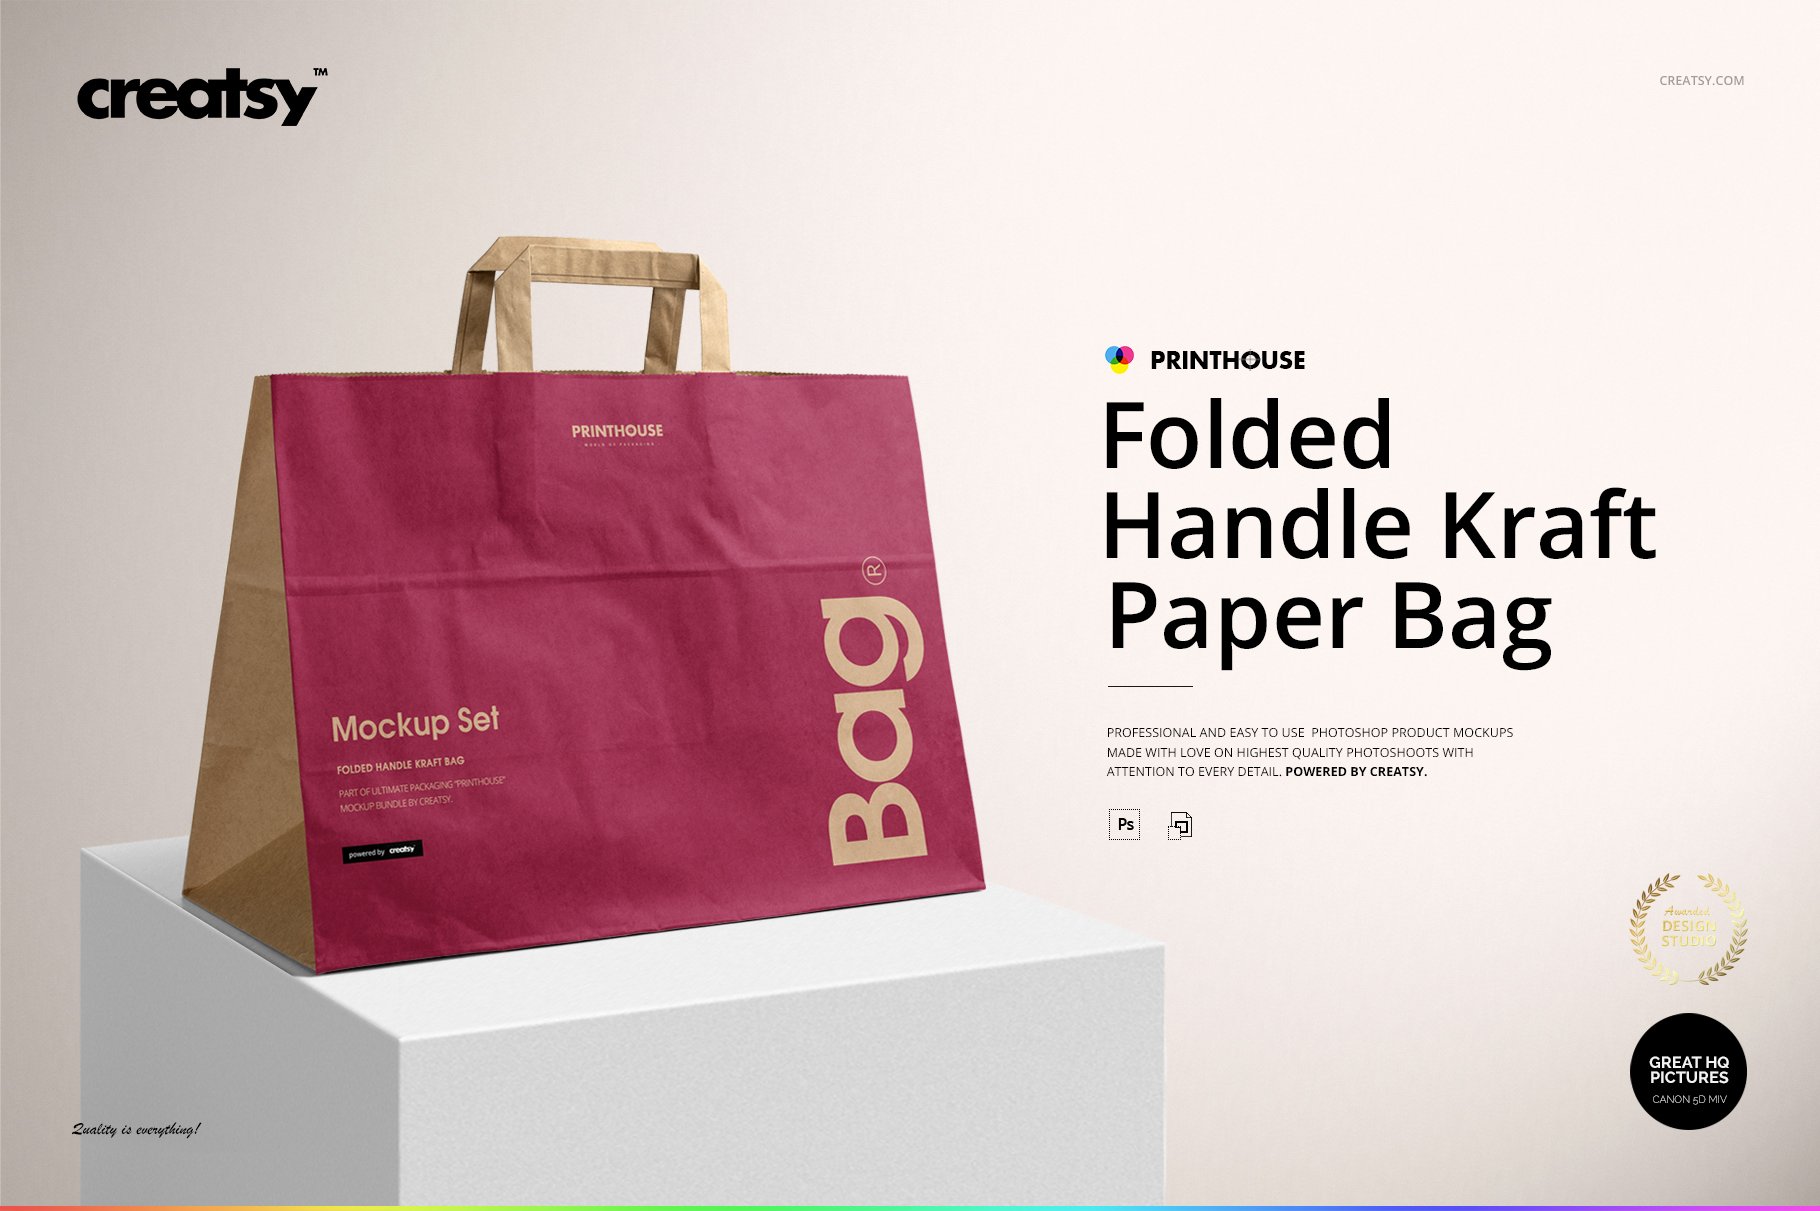 Folded Handle Kraft Paper Bag Mockup cover image.